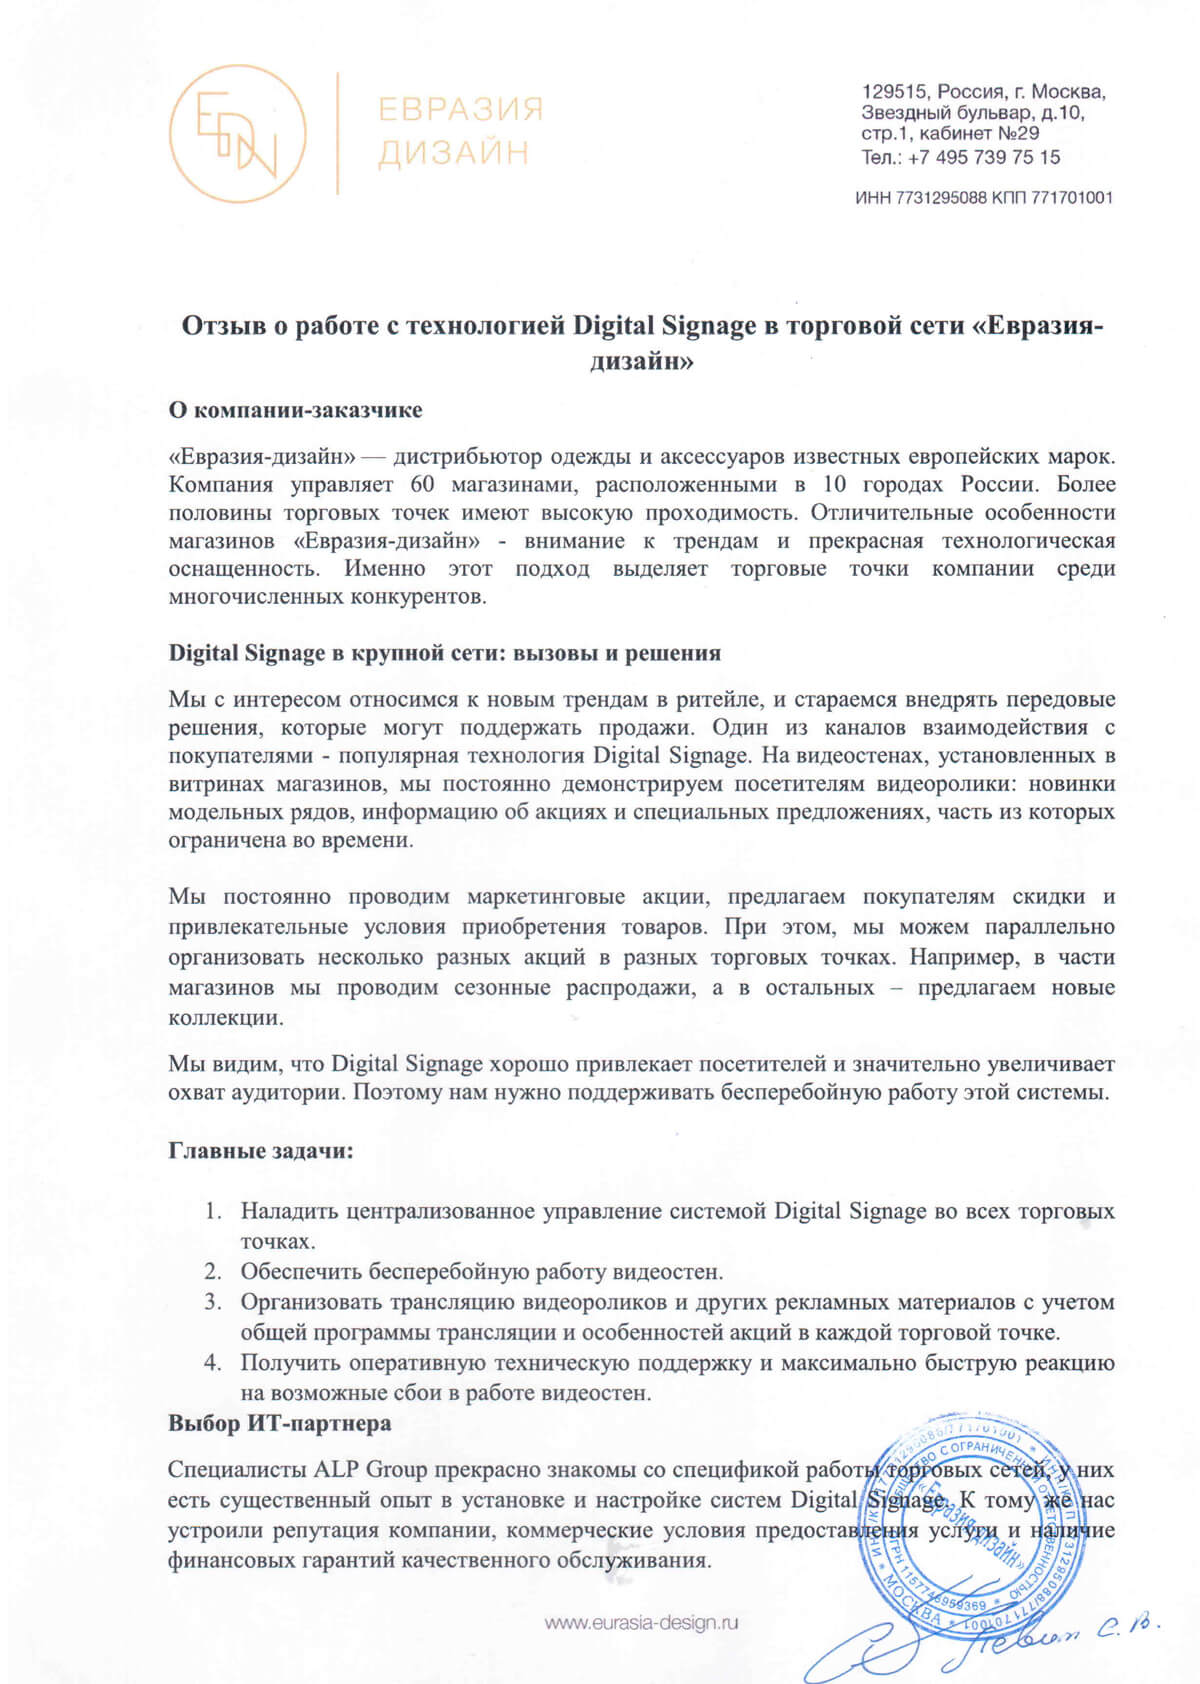 Работа с технологией Digital Signage в торговой сети «Евразия-дизайн» страница 1